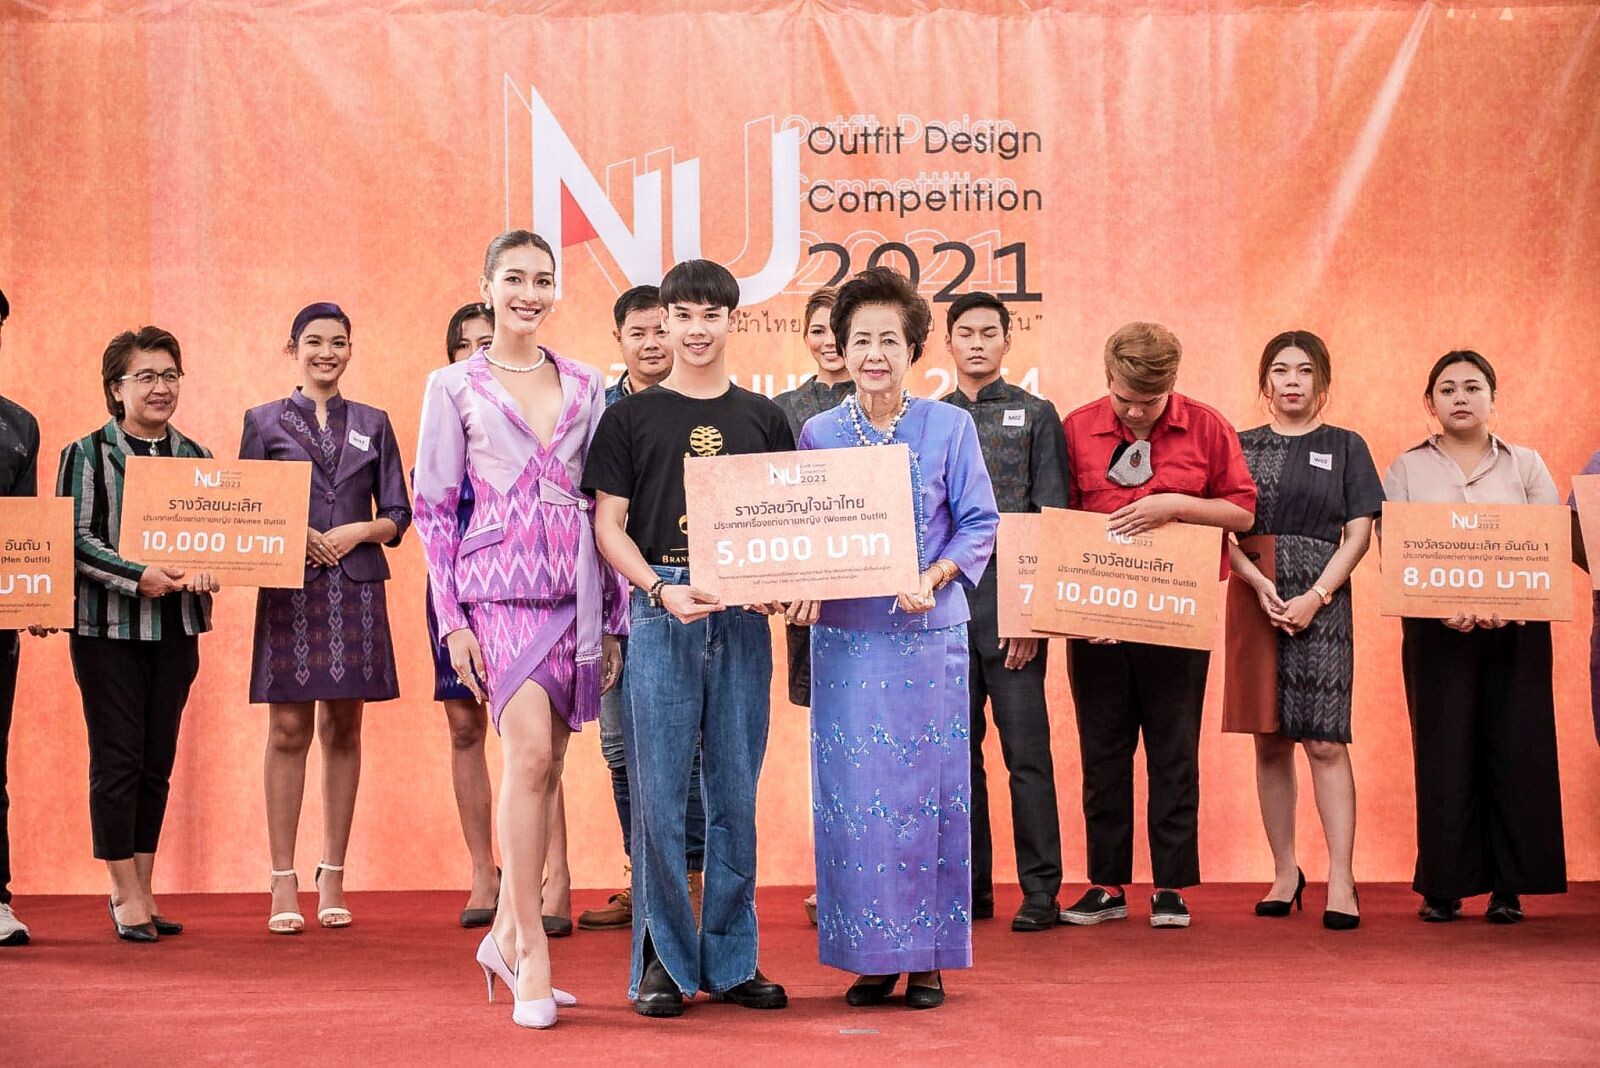 นศ.ธุรกิจแฟชั่น DPU คว้า 3 รางวัลประกวดเครื่องแต่งกาย Nu Outfit Design Competition 2021